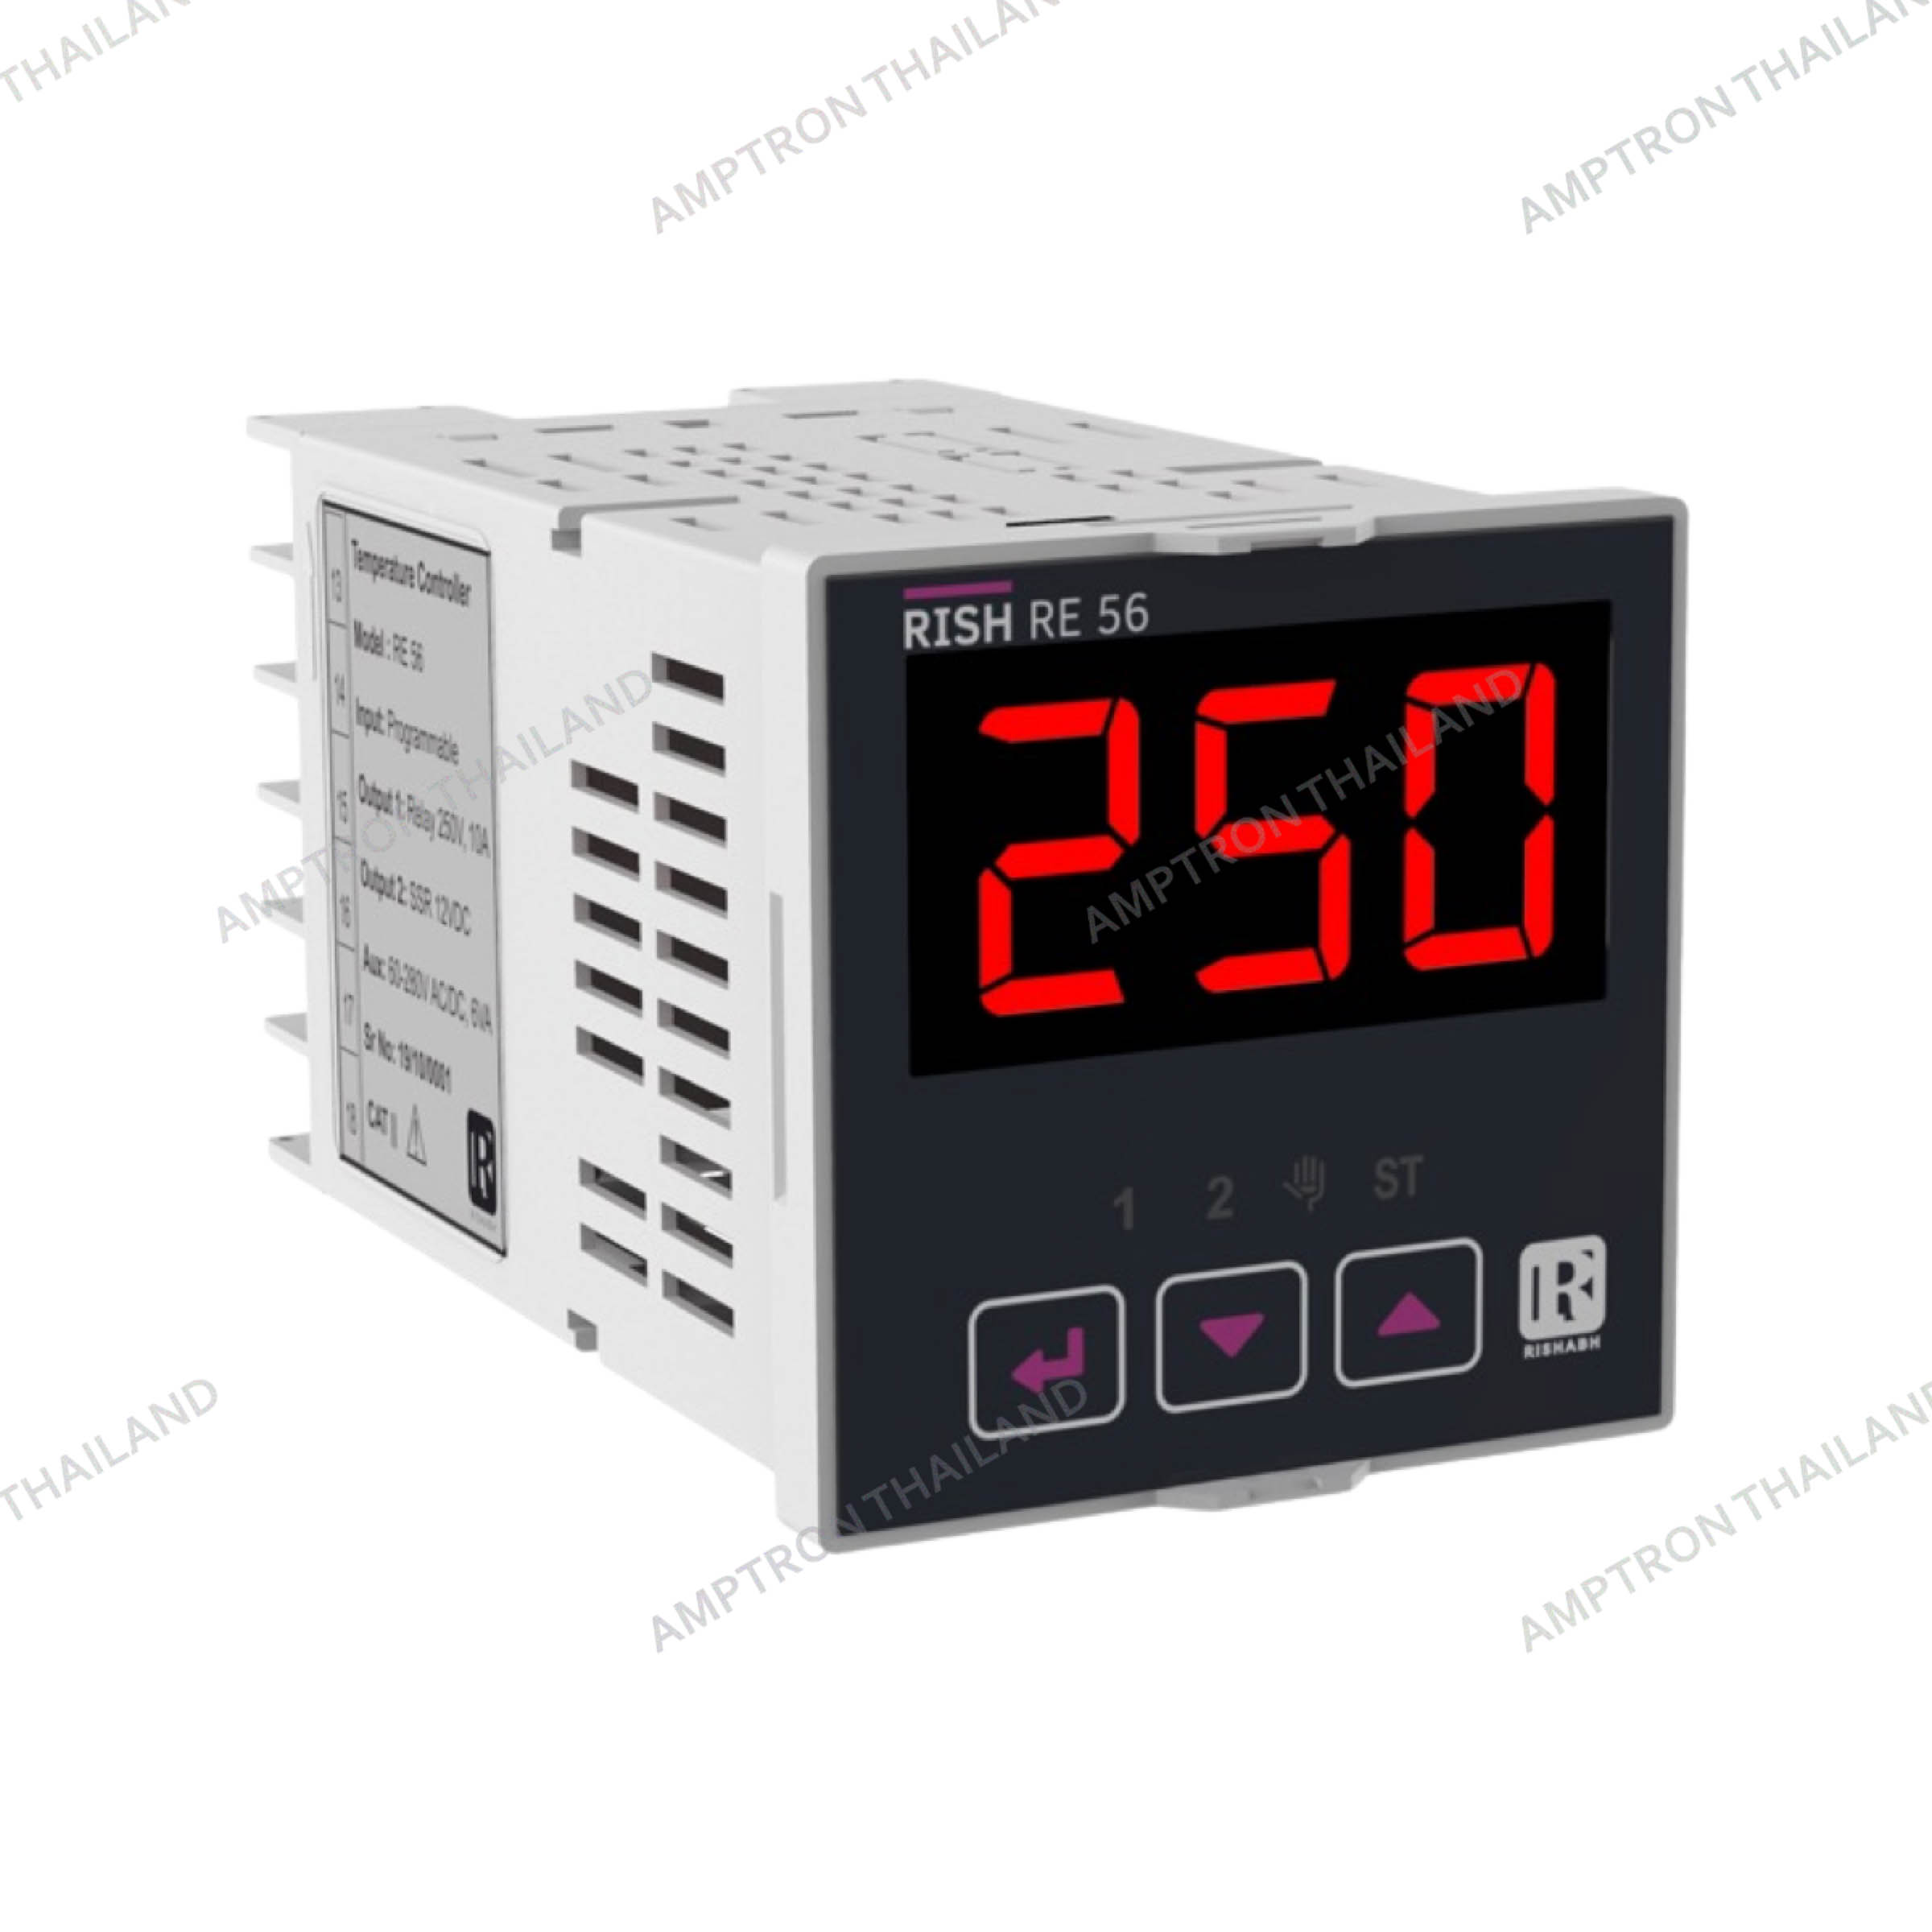 RE 56 Series Temperature Controller